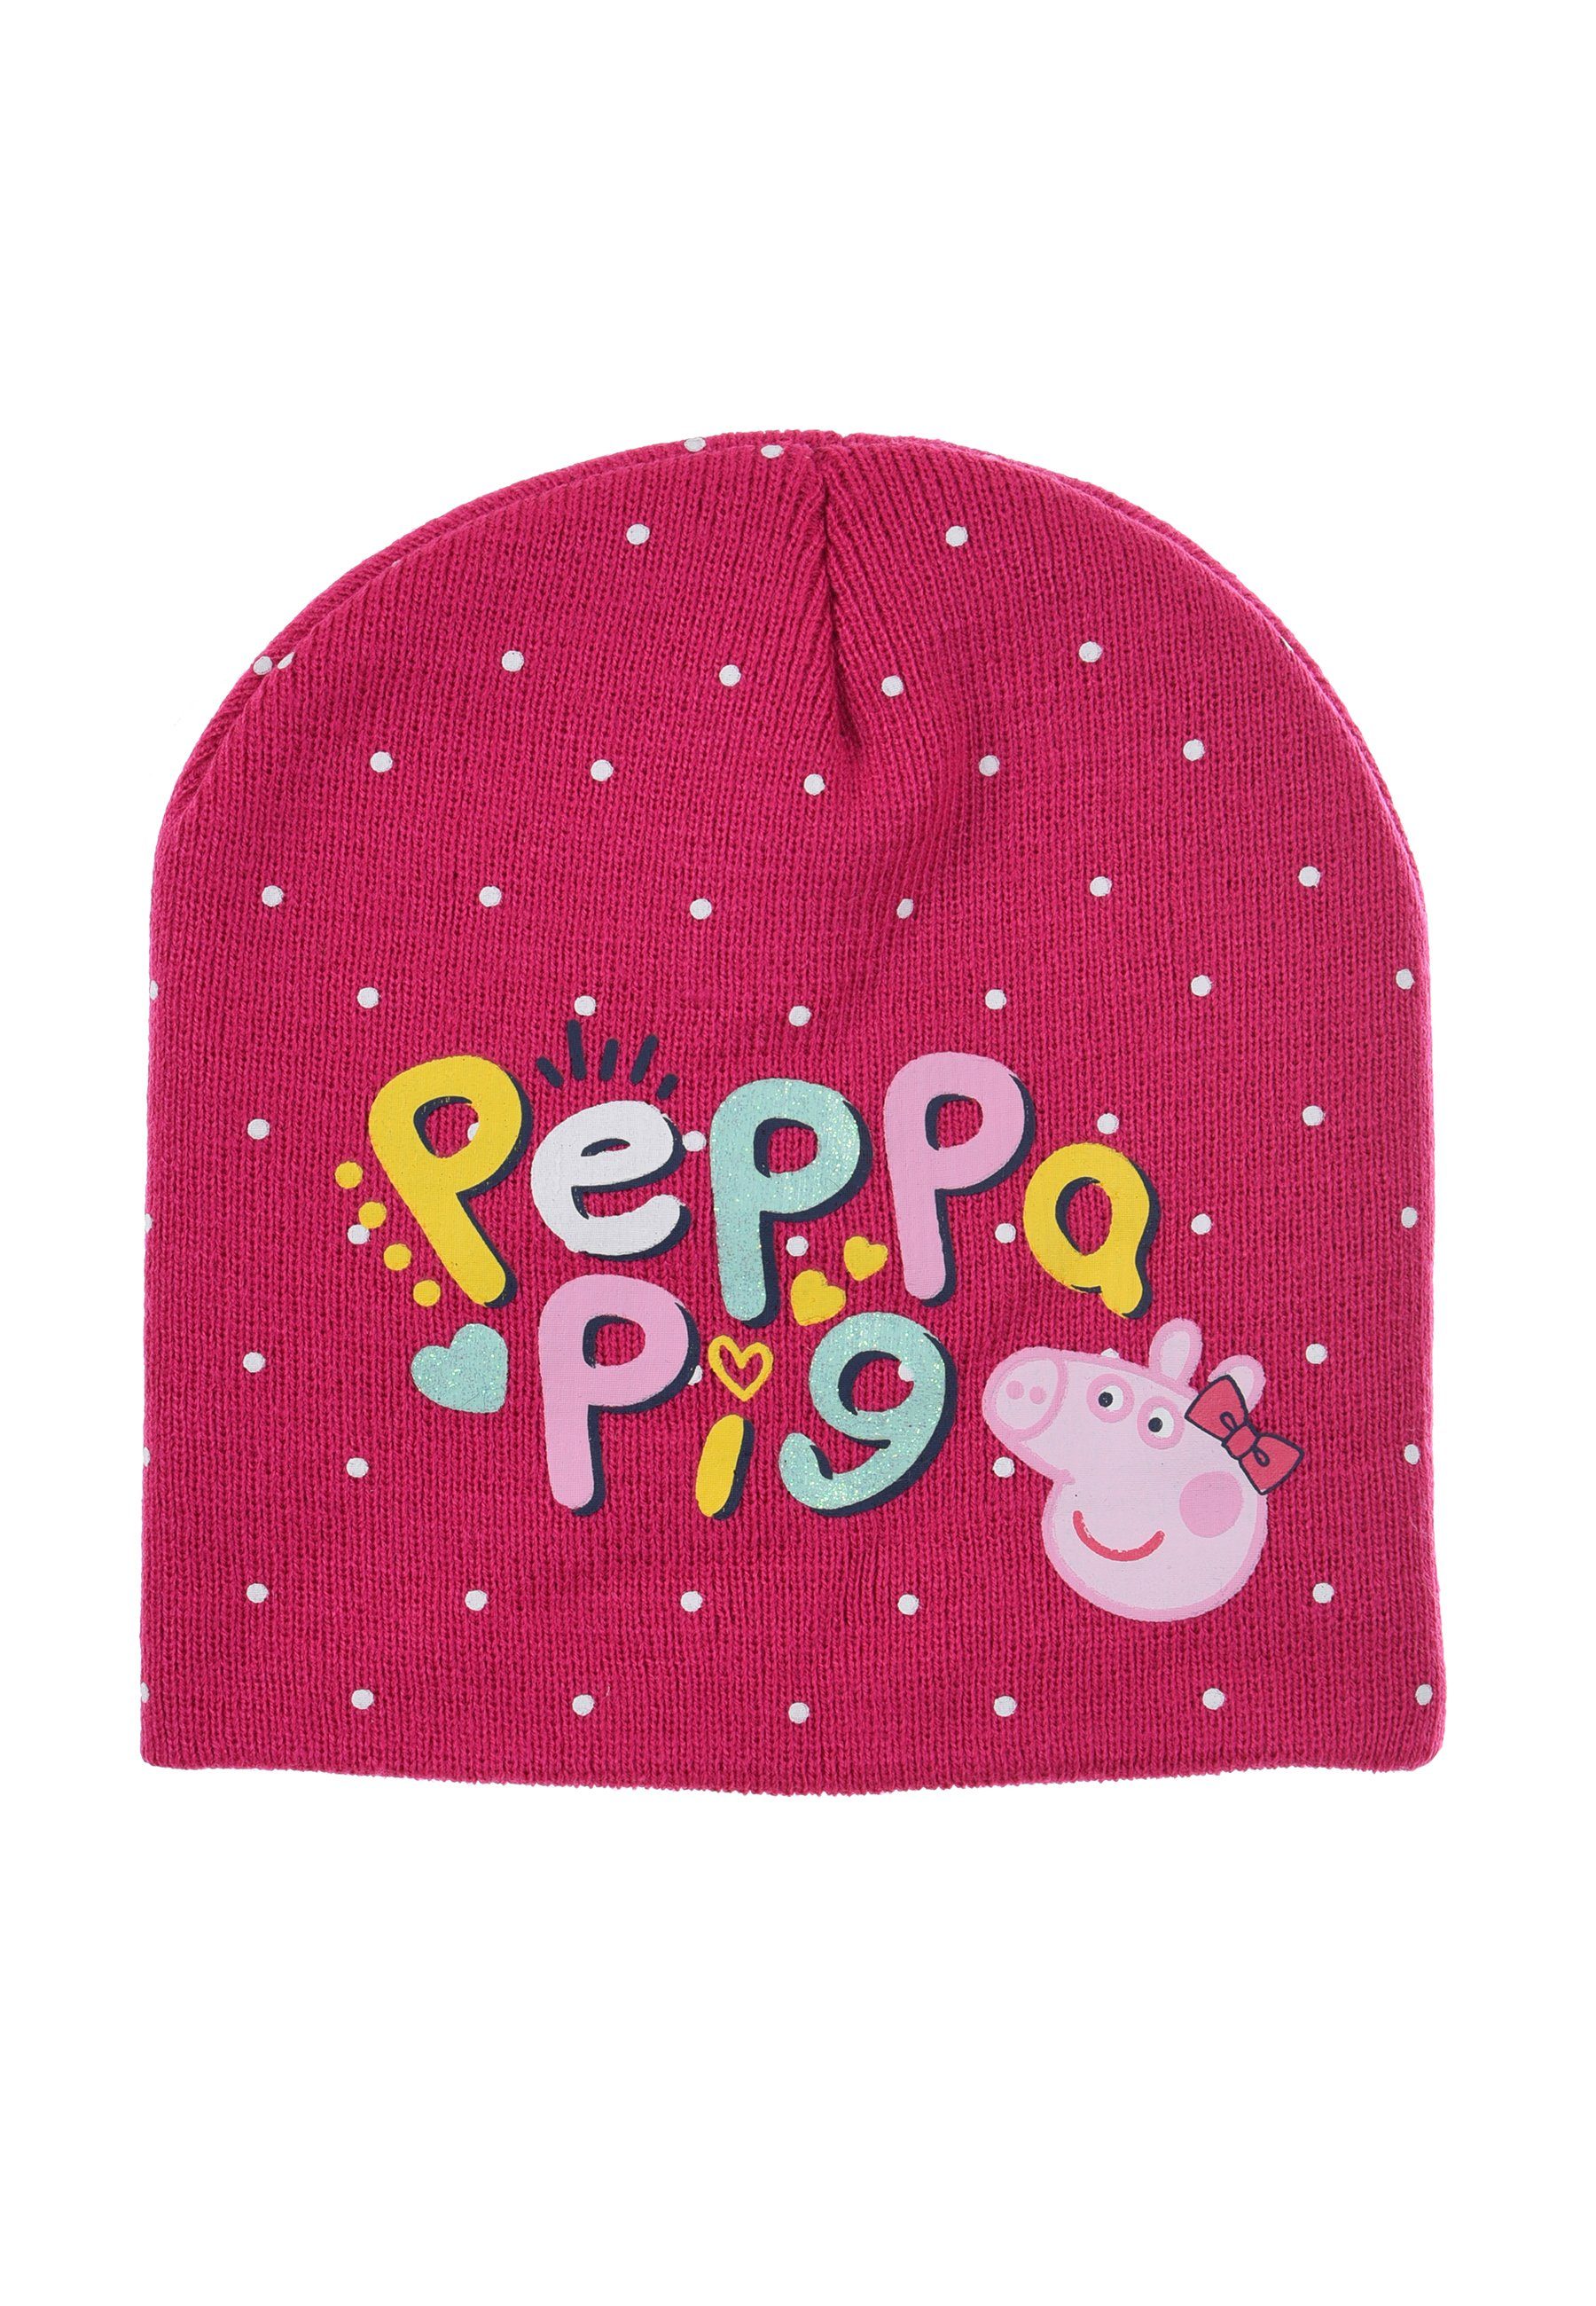 Peppa Pig Beanie Peppa Kinder Wutz Pink Winter-Mütze Mädchen